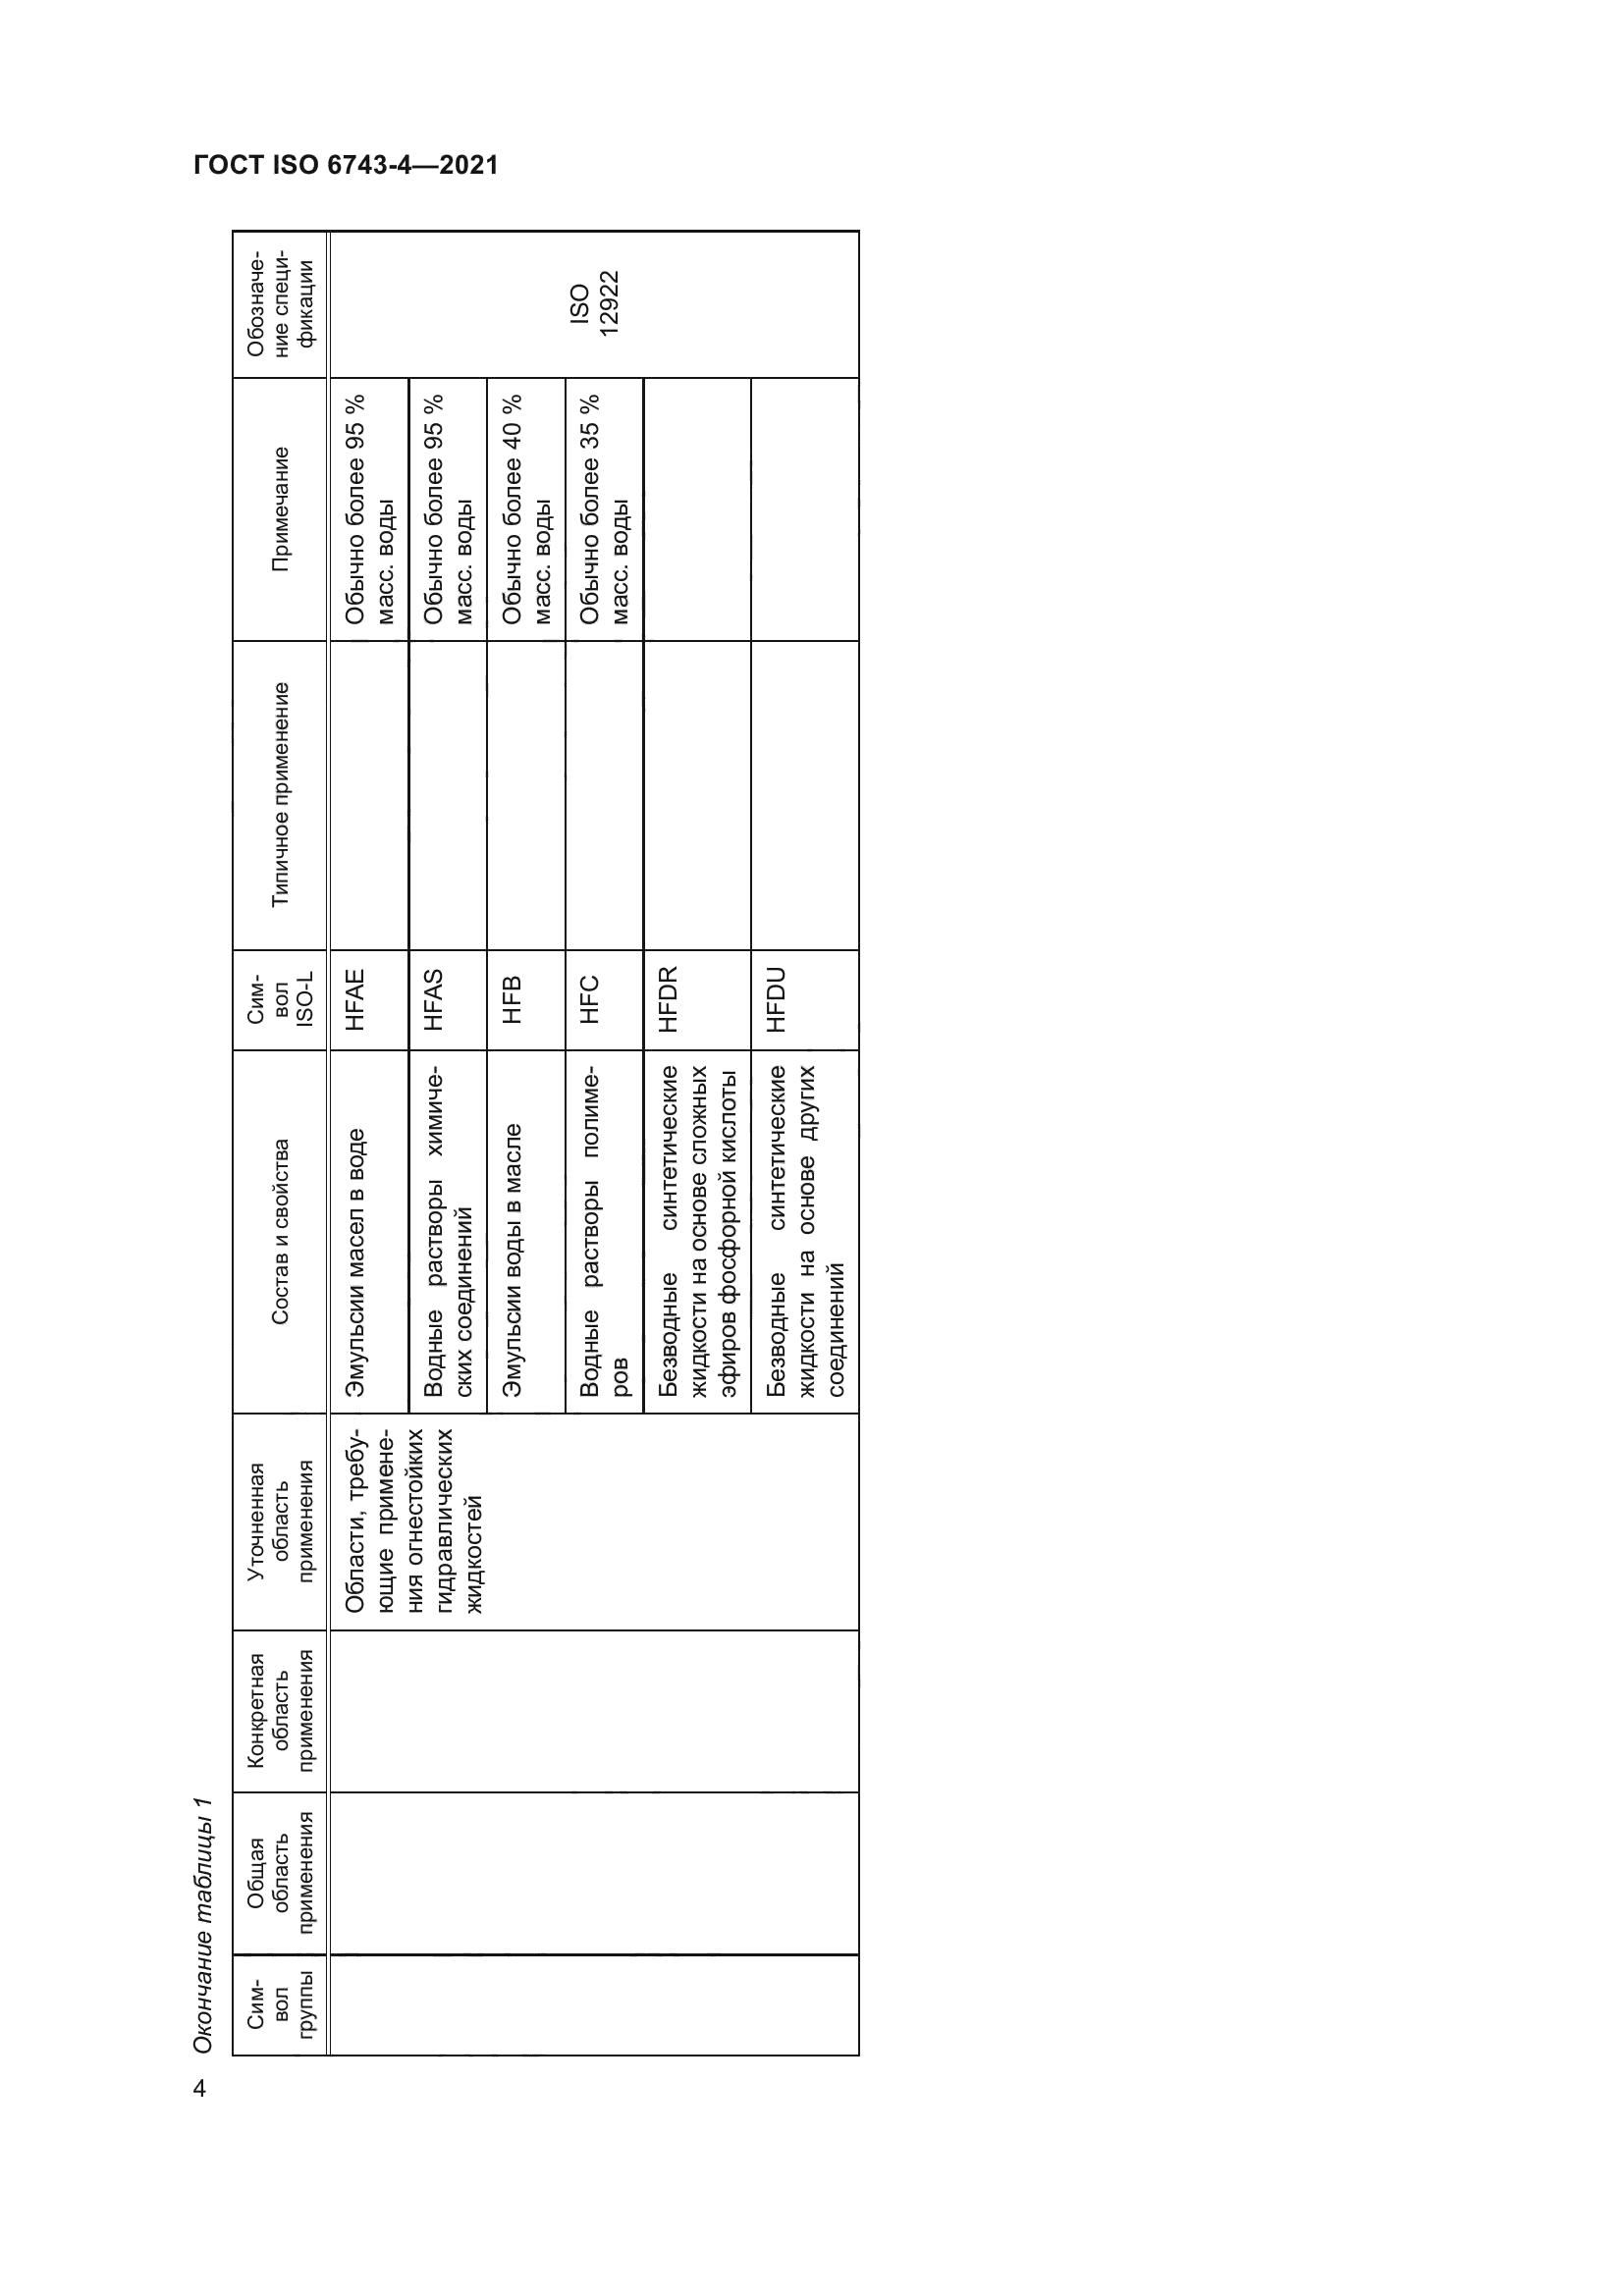 ГОСТ ISO 6743-4-2021